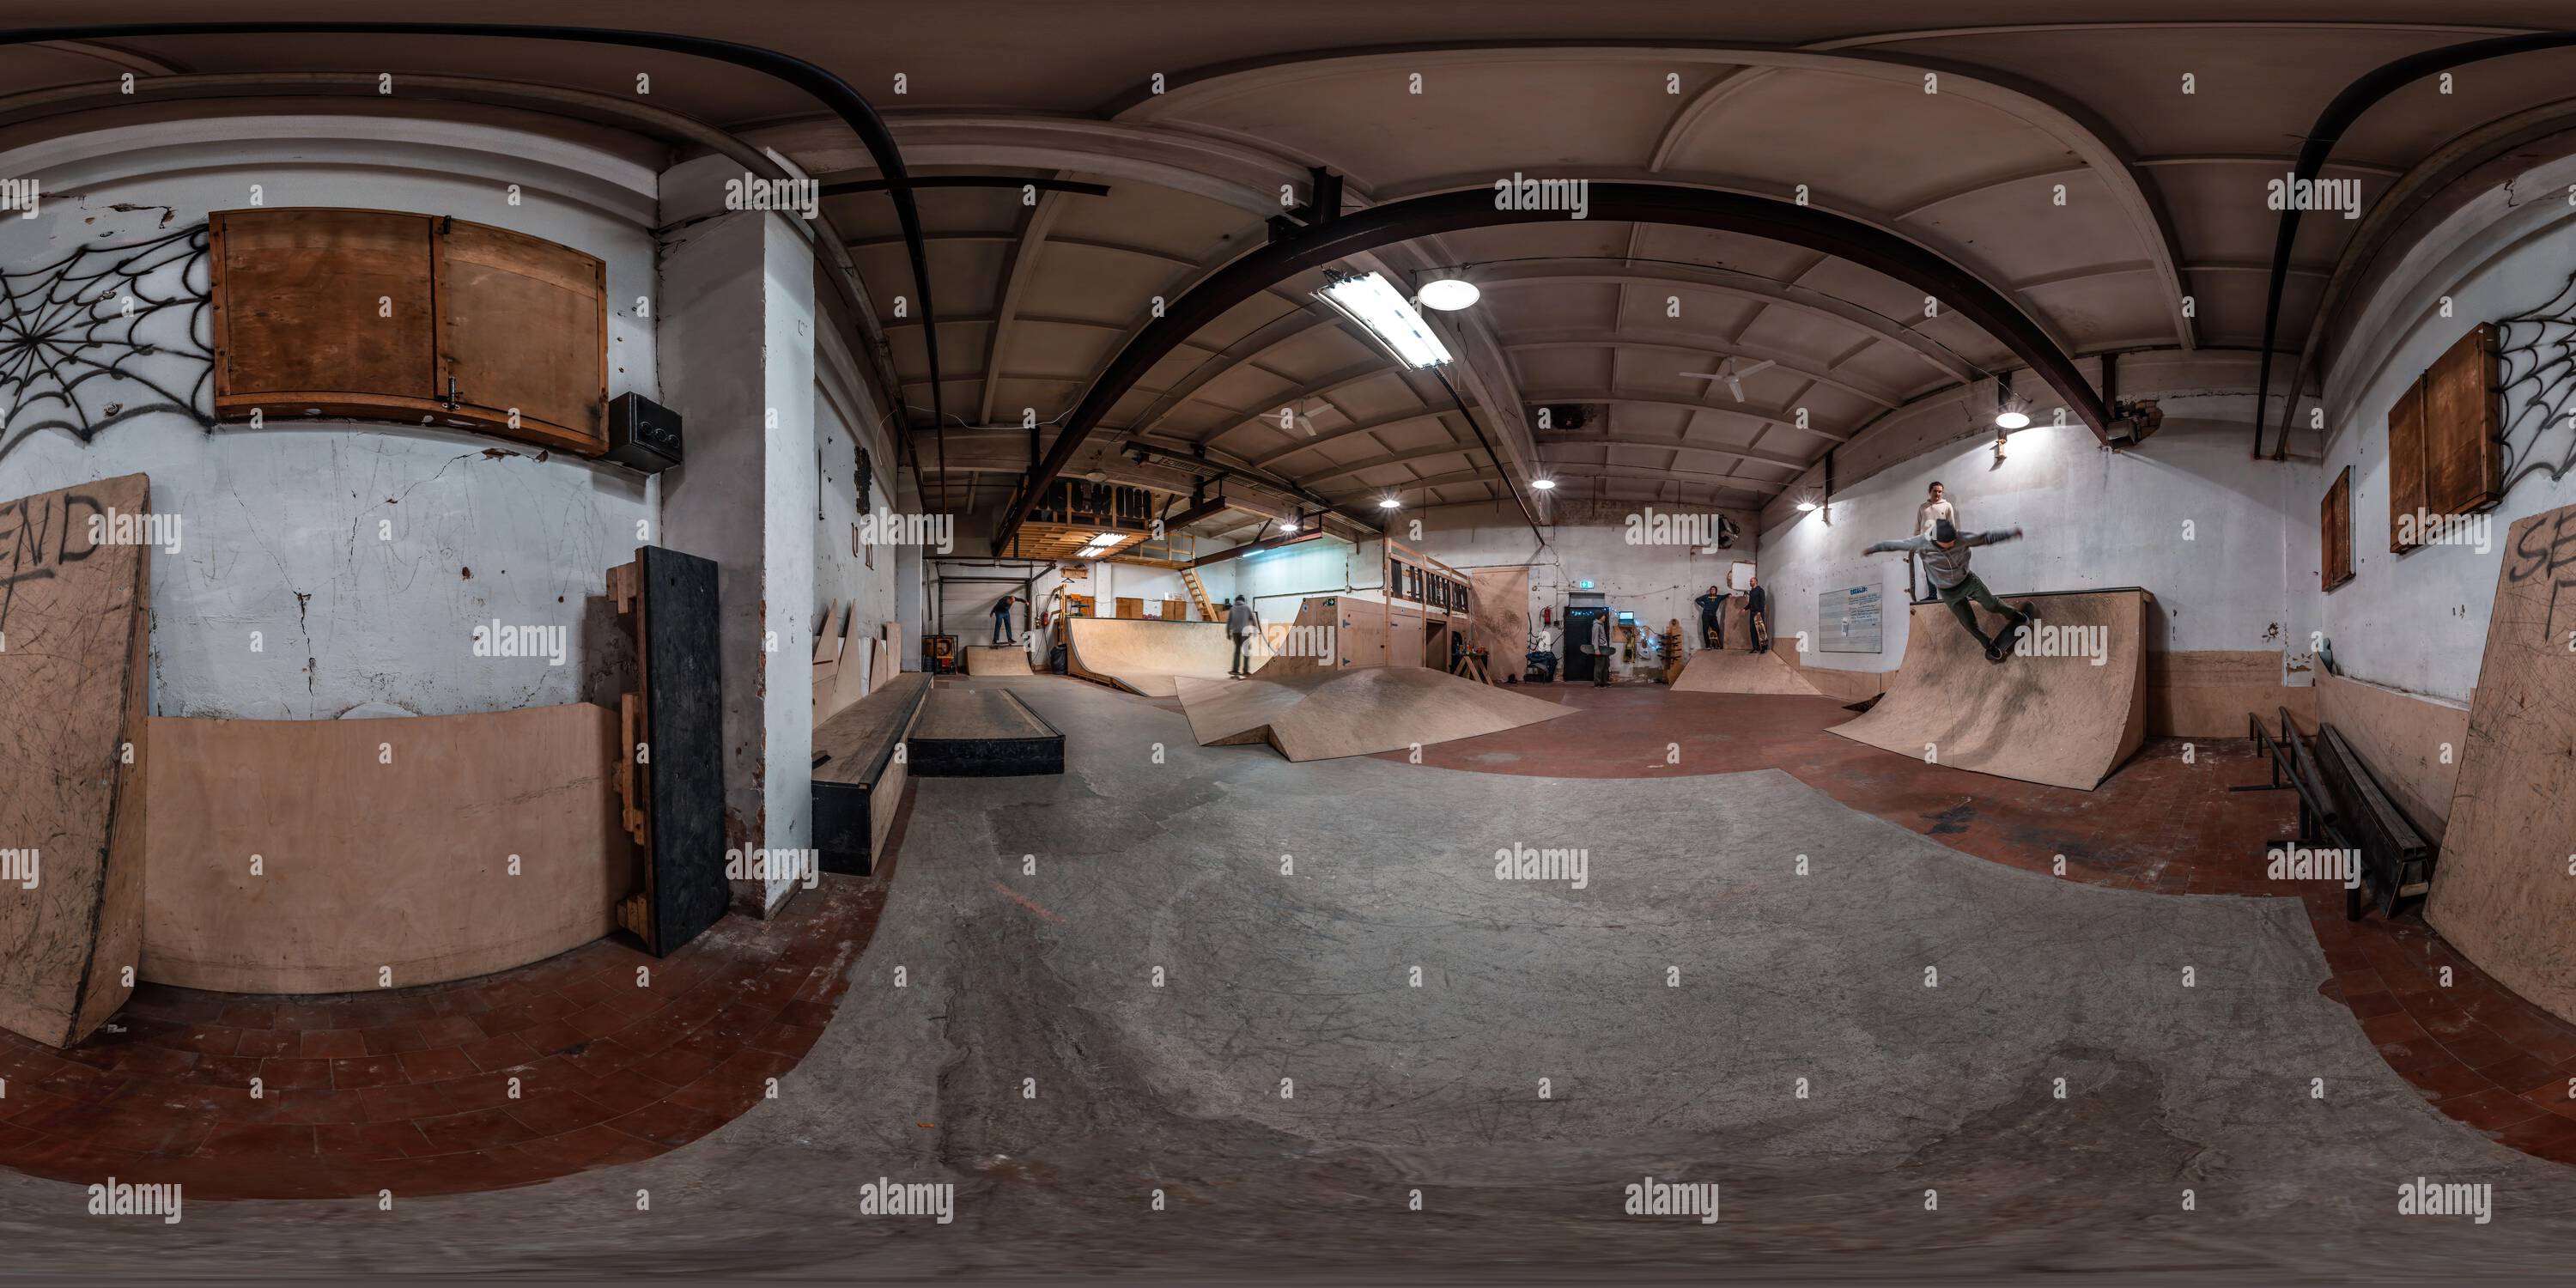 360 Grad Panorama Ansicht von 360-Grad-Bild eines Skateparks in einem alten Industriegebäude